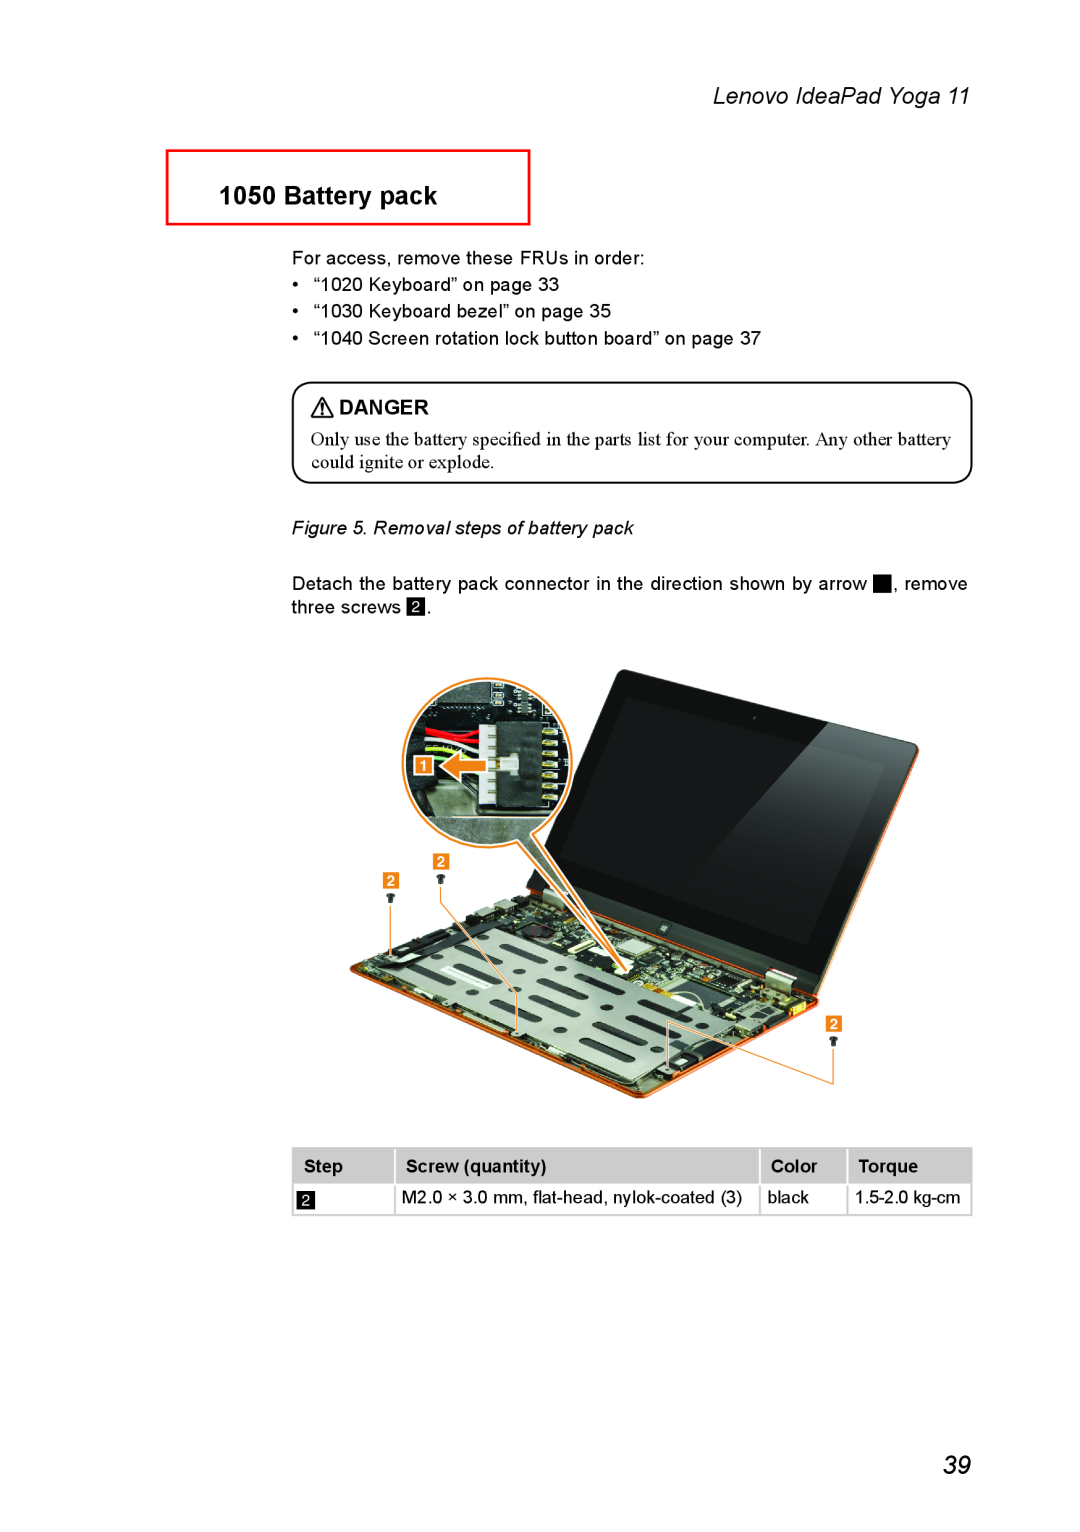 Lenovo 11 manual Battery pack, Removal steps of battery pack, Lenovo IdeaPad Yoga, Danger 